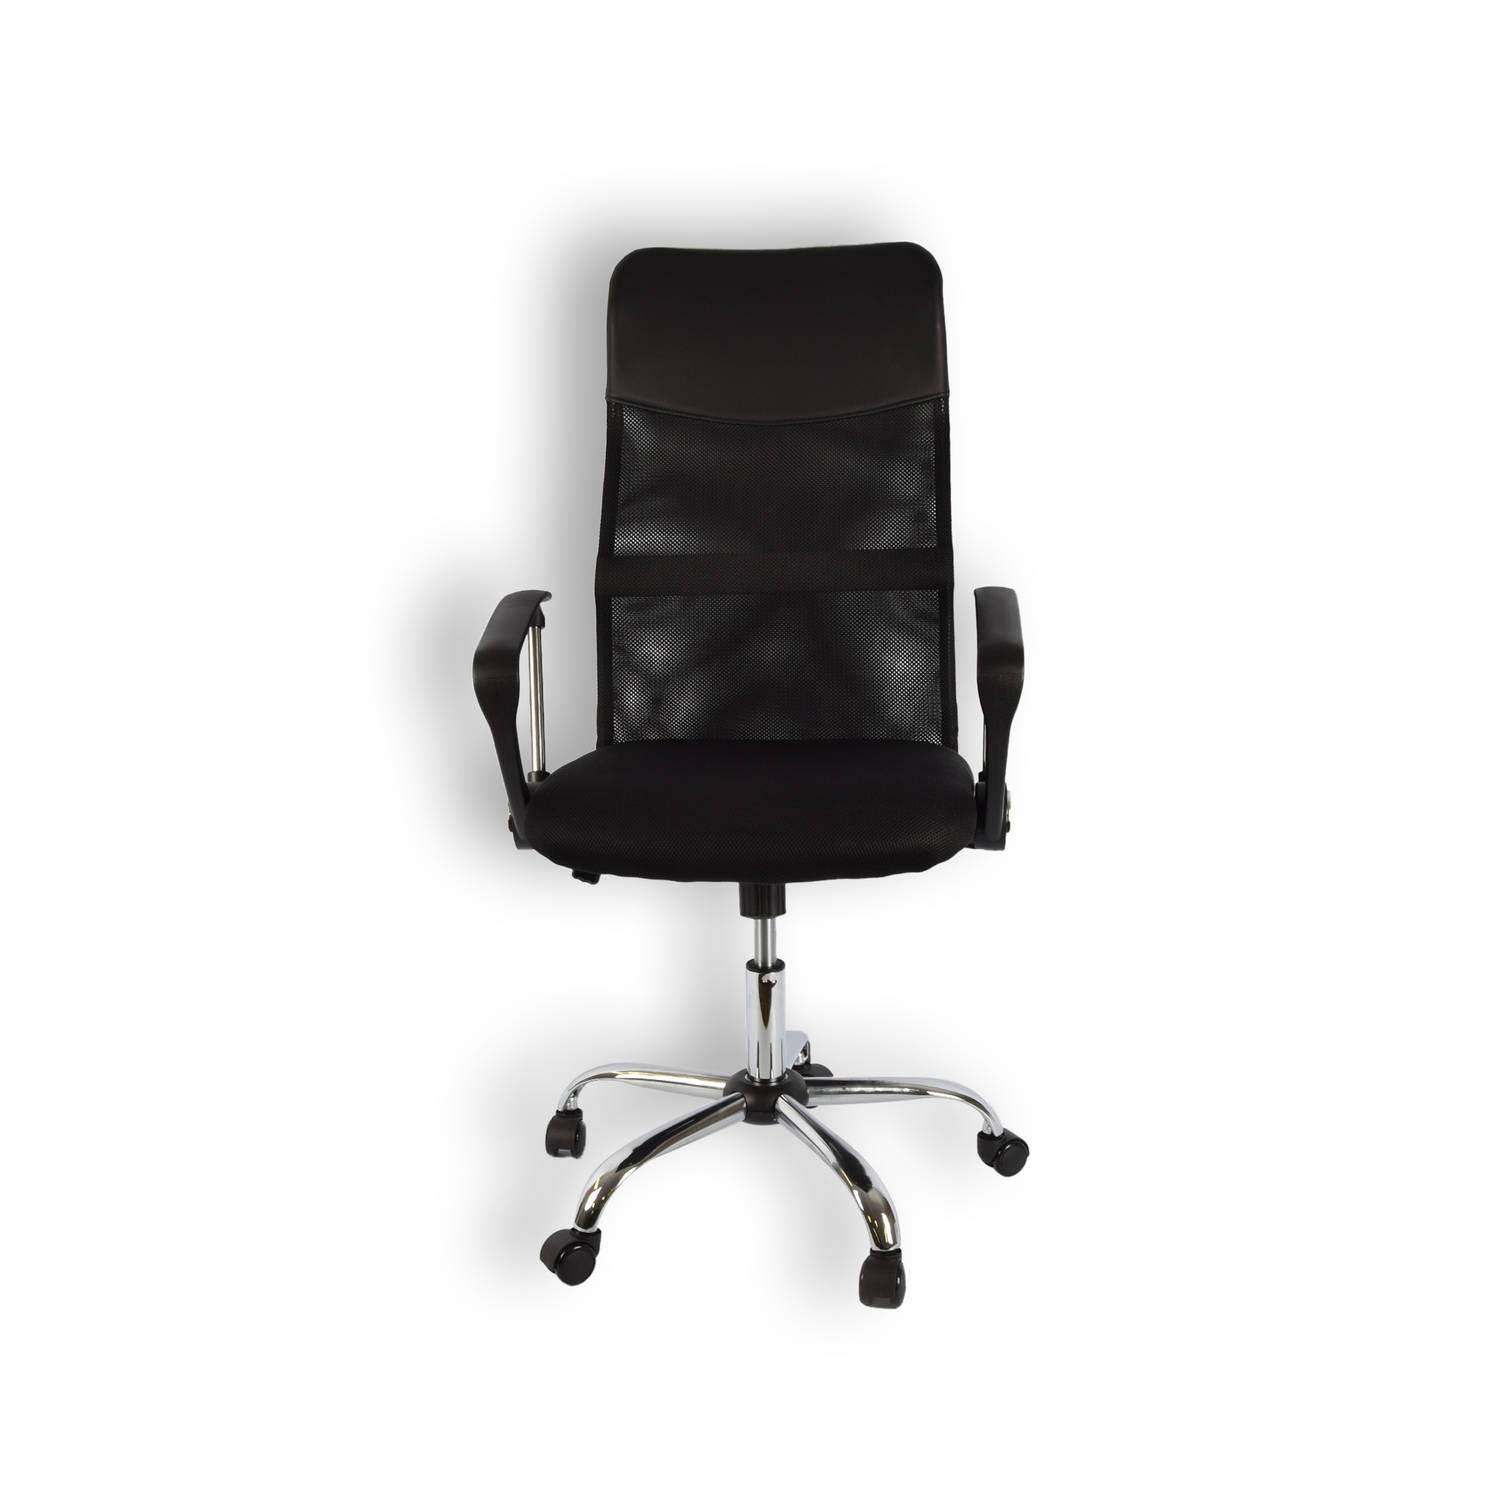 Stijlvolle en Comfortabele Ergonomische Bureaustoel Zwart Max gewicht 130KG Verstelbaar en Design me